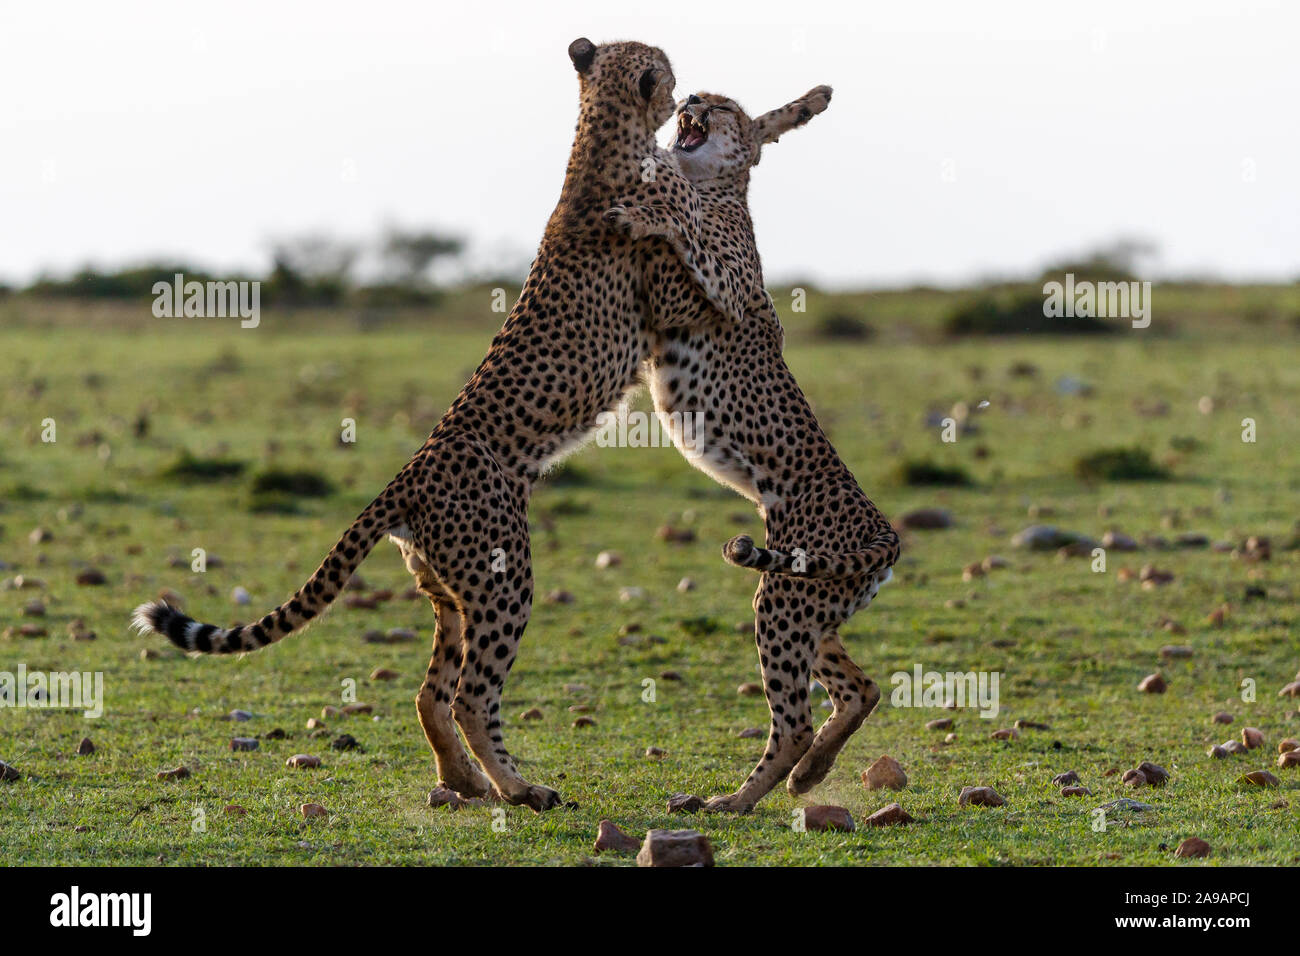 Afrika: zwei Geparden auf der Quickstep. Tanzen zur afrobeat! Bemerkenswerte Fotos zeigen eine Vielzahl von afrikanischen Tieren strutting ihrer coolen St Stockfoto